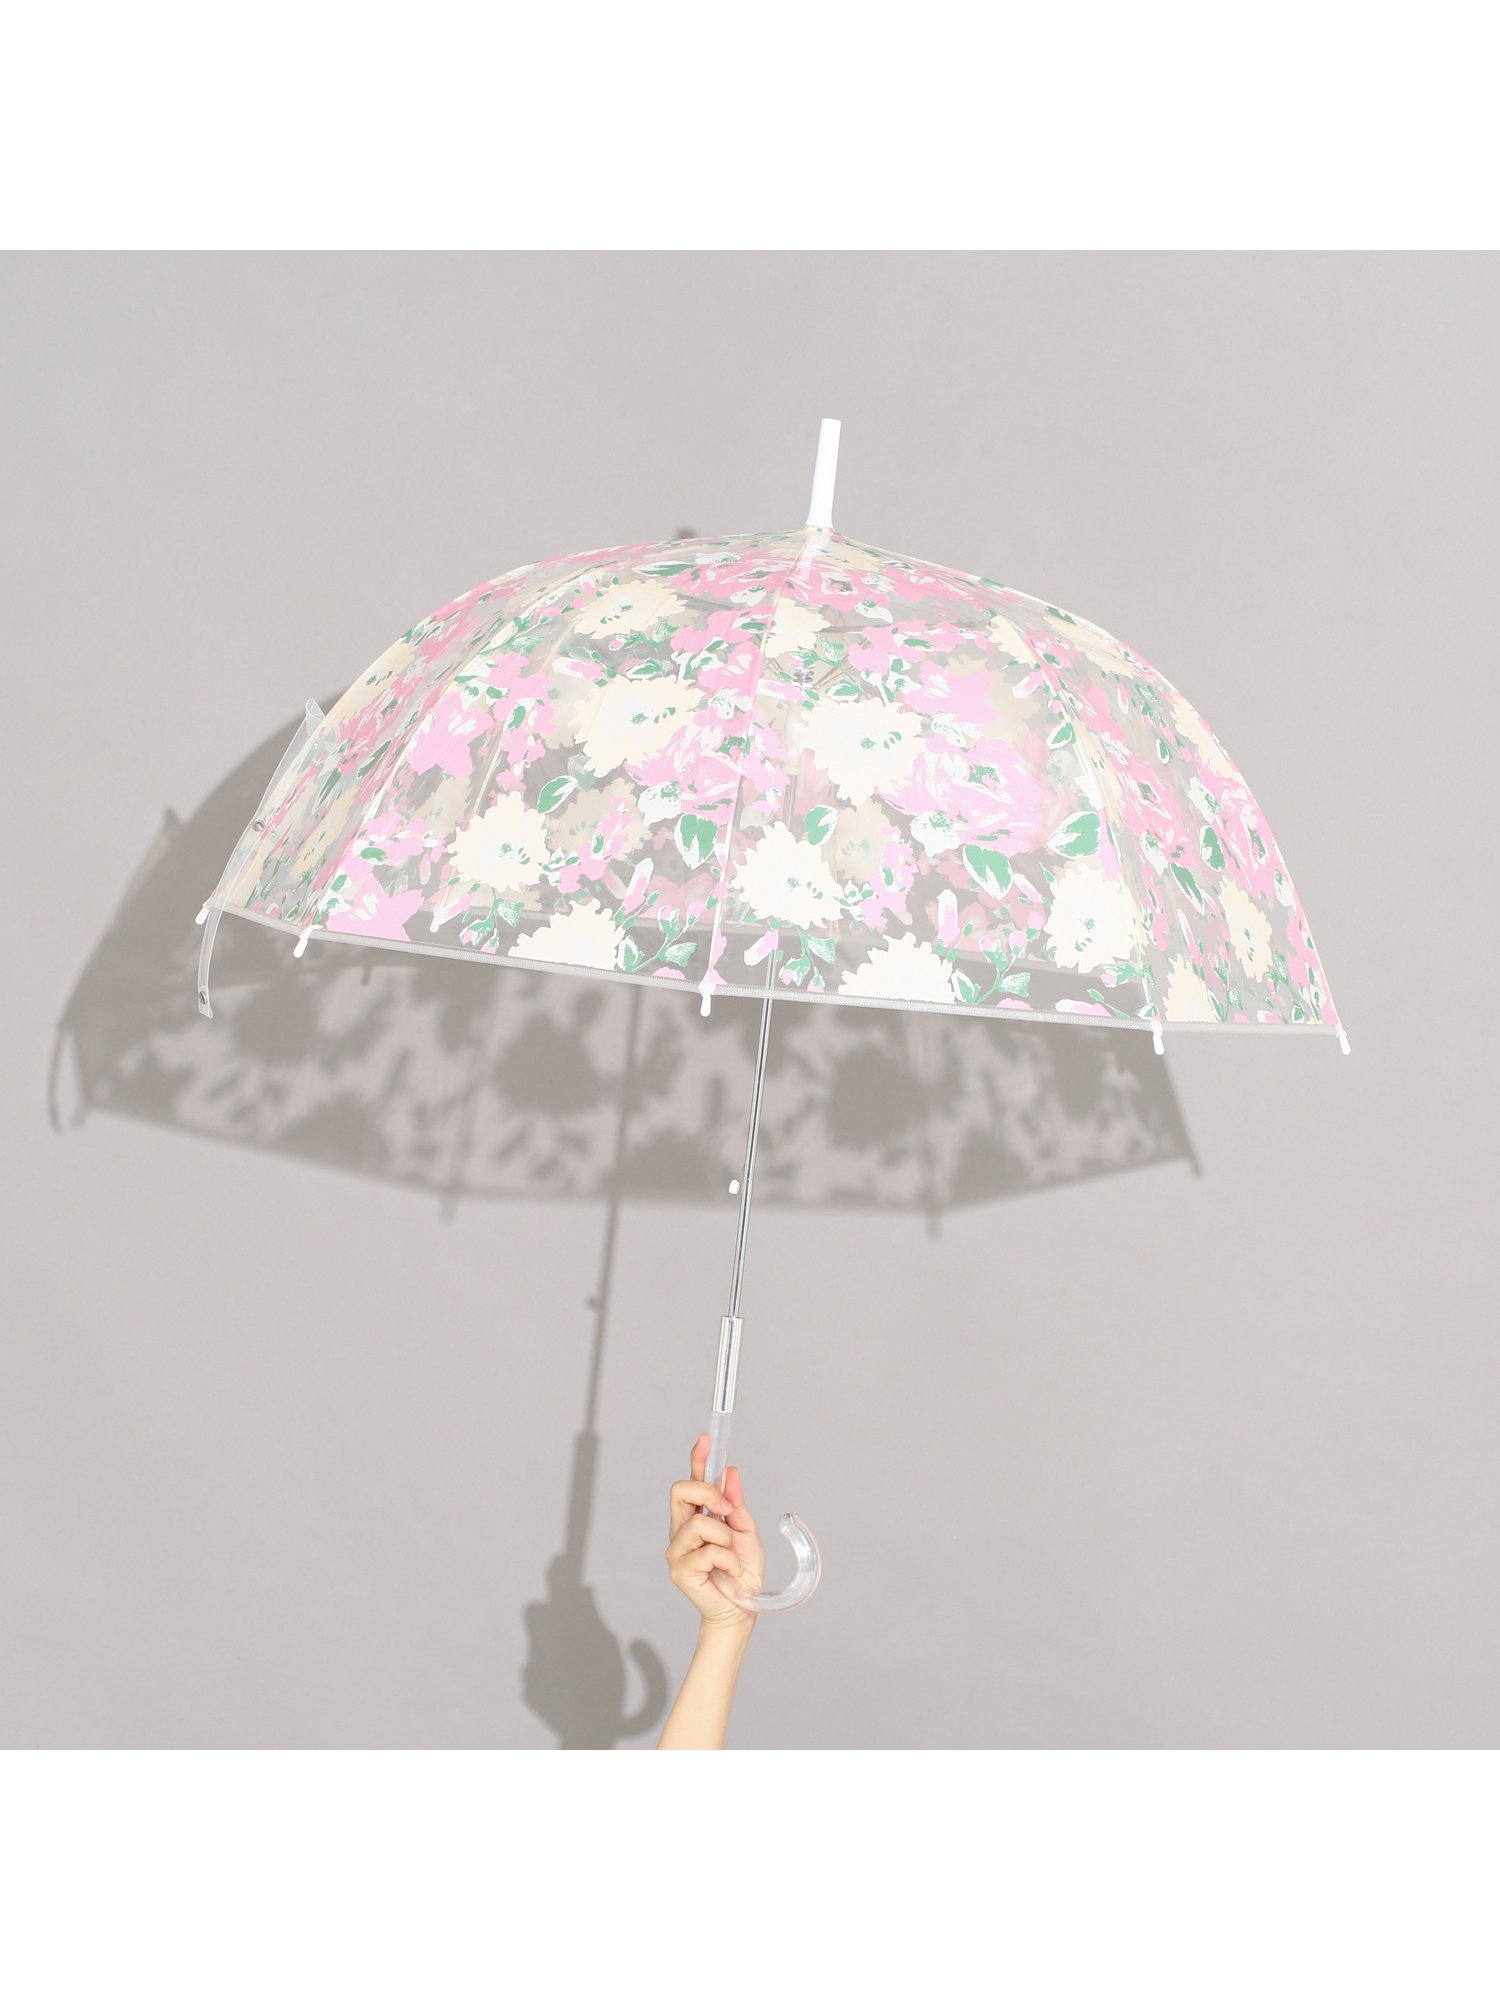 フランフランの傘で雨の日も楽しく 人気の花柄や折りたたみ 軽量タイプも Jouer ジュエ